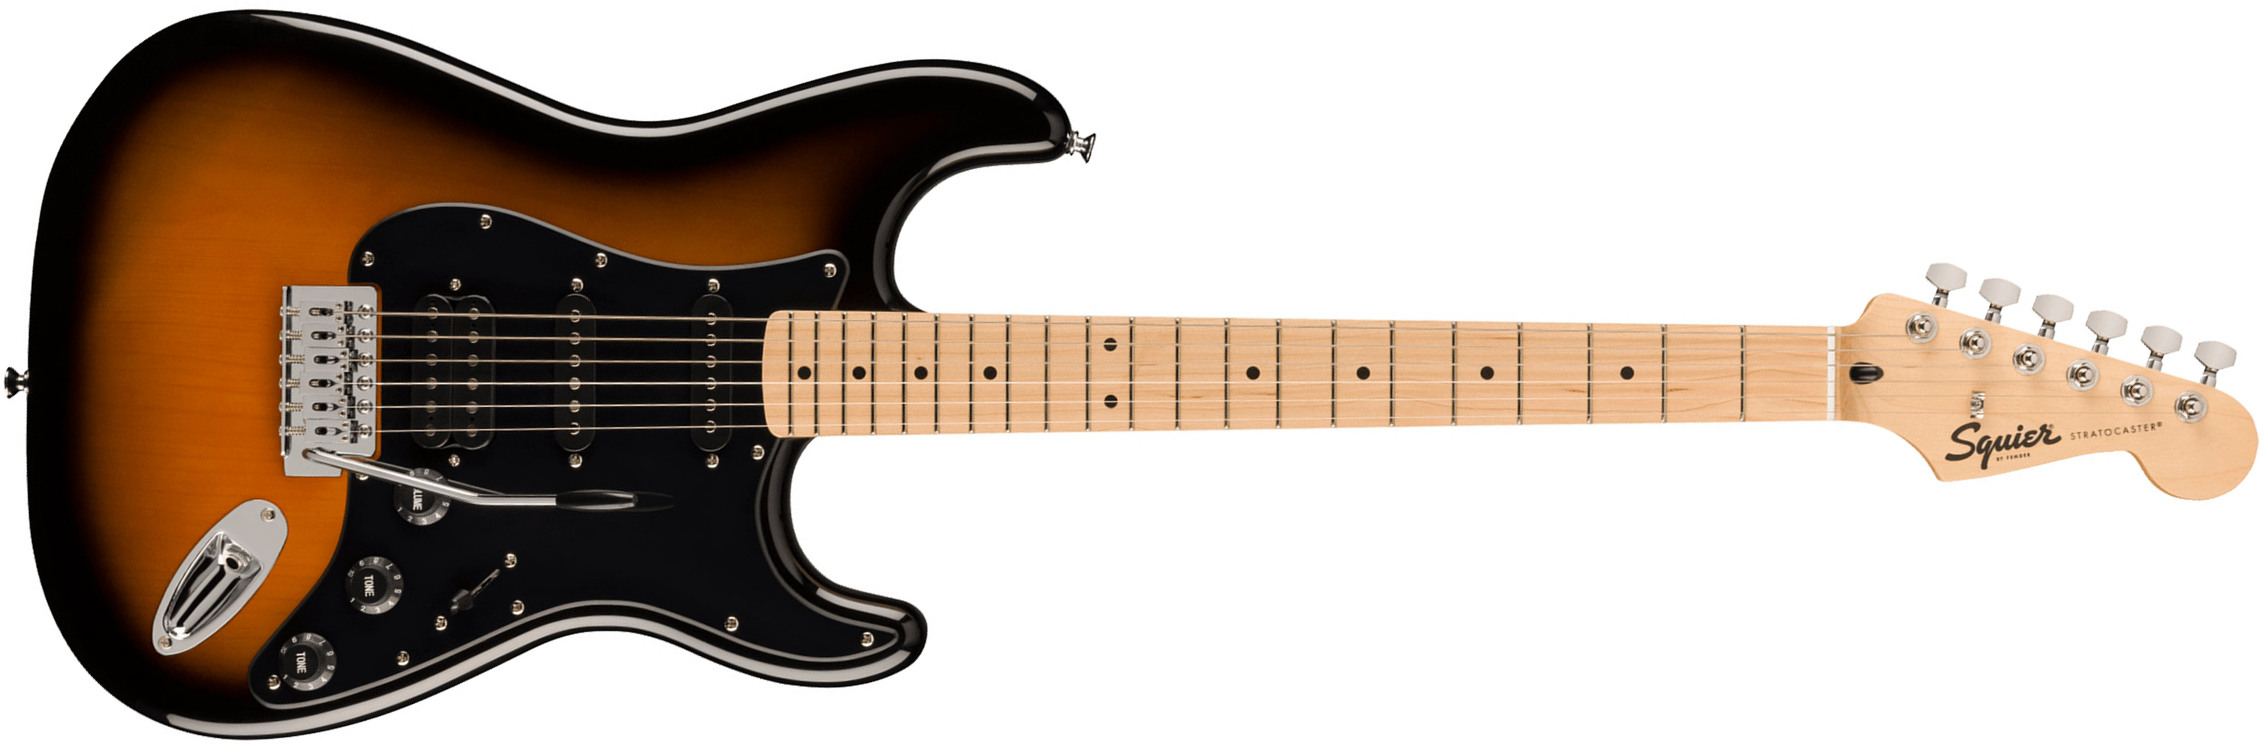 Squier Strat Sonic Hss Trem Mn - 2-color Sunburst - Guitare Électrique Forme Str - Main picture